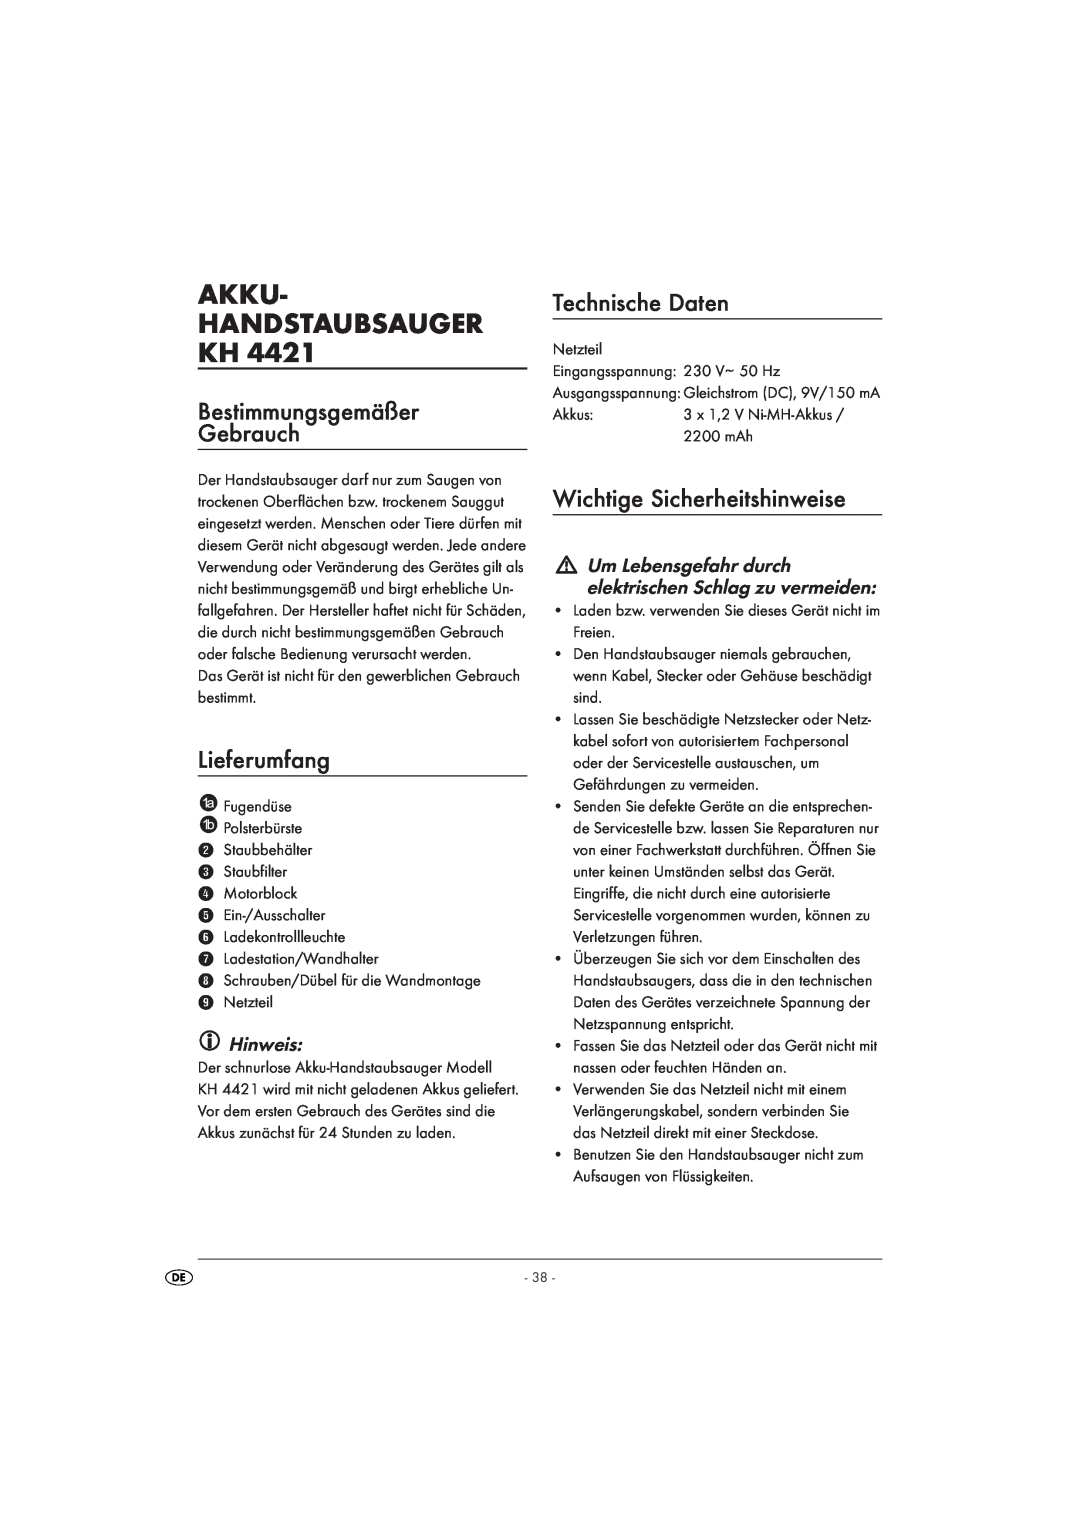 Kompernass KH 4421 manual Akku Handstaubsauger Kh, Bestimmungsgemäßer Gebrauch, Lieferumfang, Technische Daten, Hinweis 